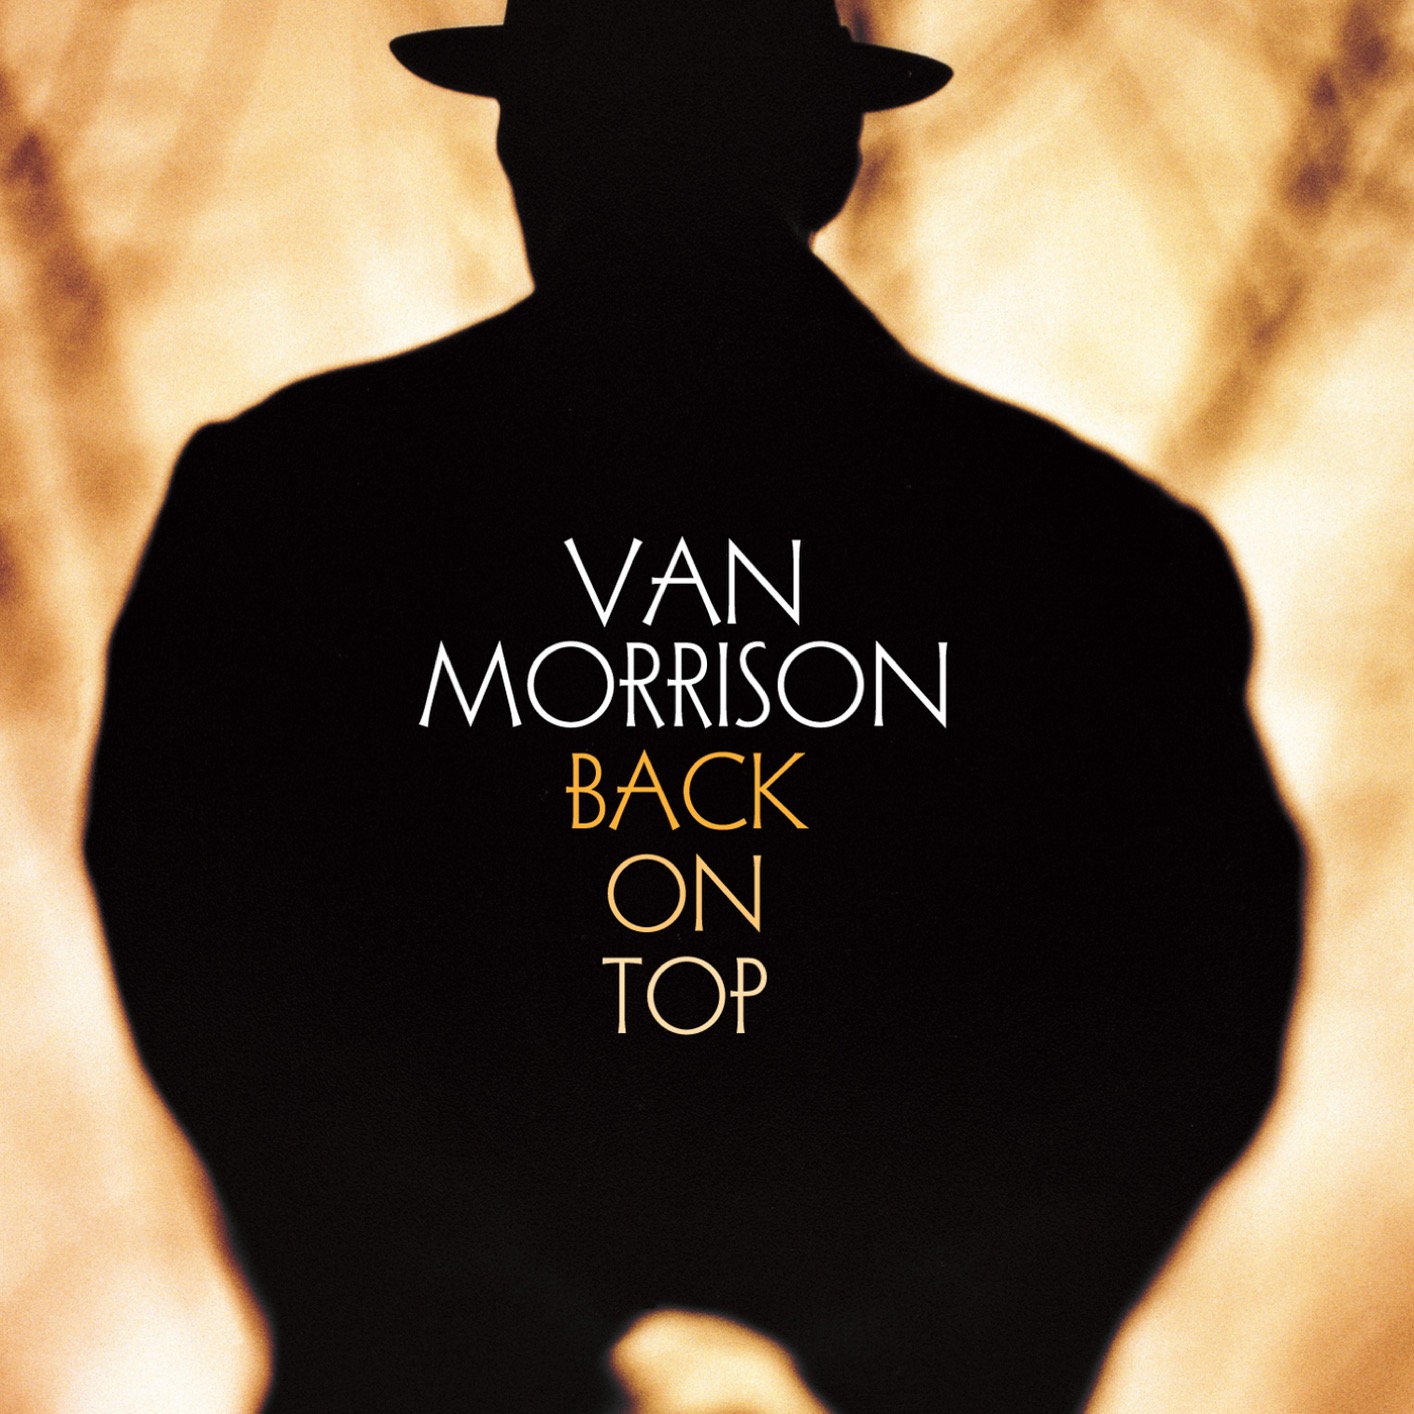 Van Morrison - Back on Top (Remastered) (1999/2020) [FLAC 24bit/96kHz]